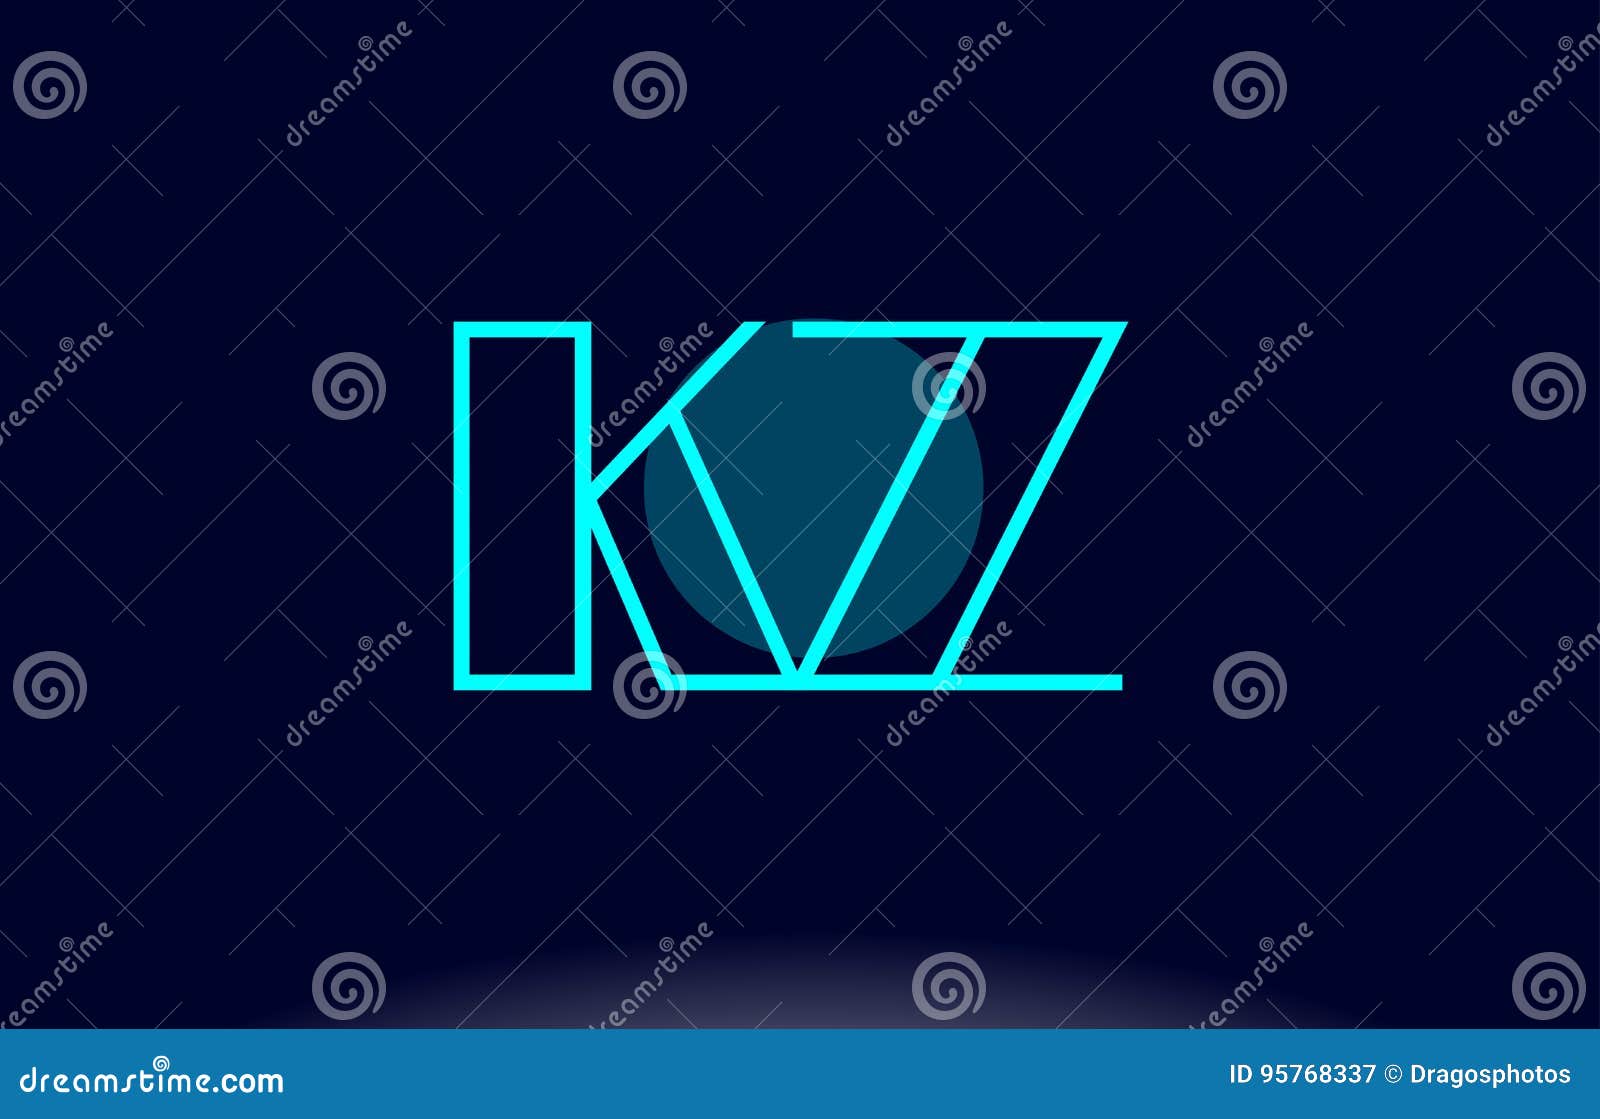 Kz Name Wallpaper